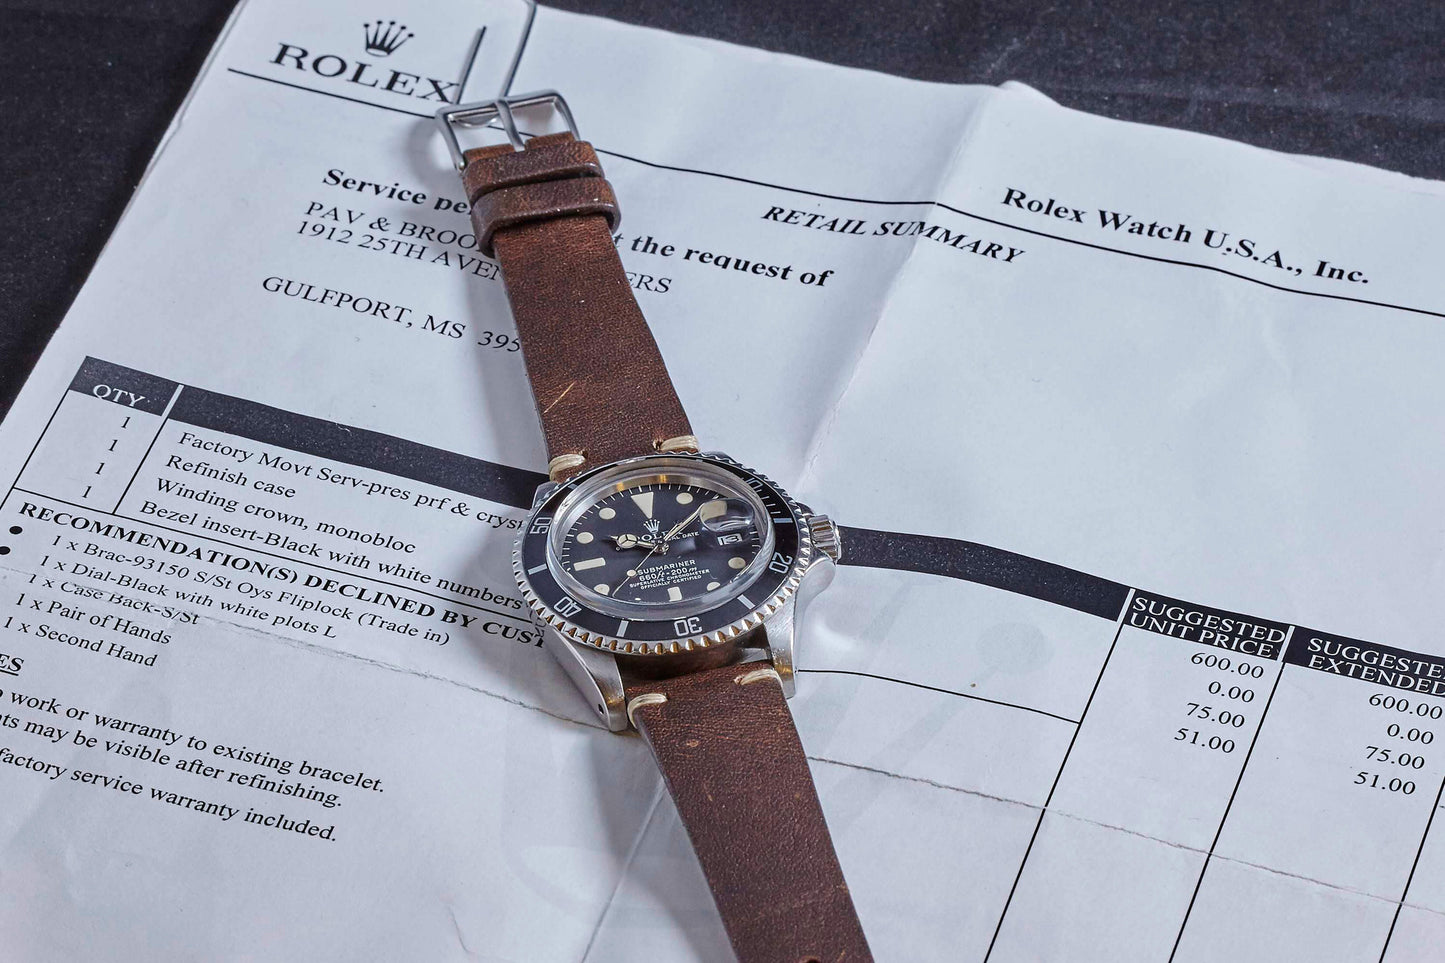 Rolex Submariner Date